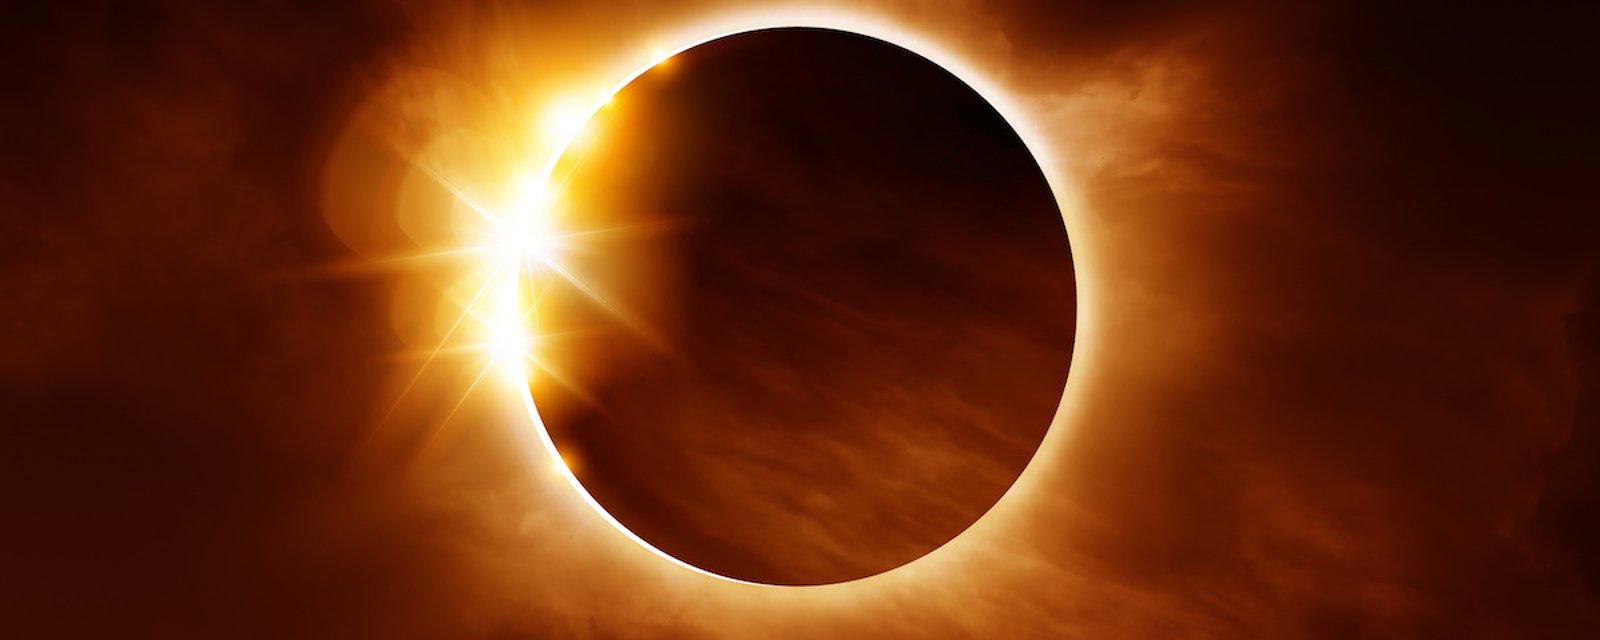 Nous aurons droit à une éclipse solaire partielle le 10 juin